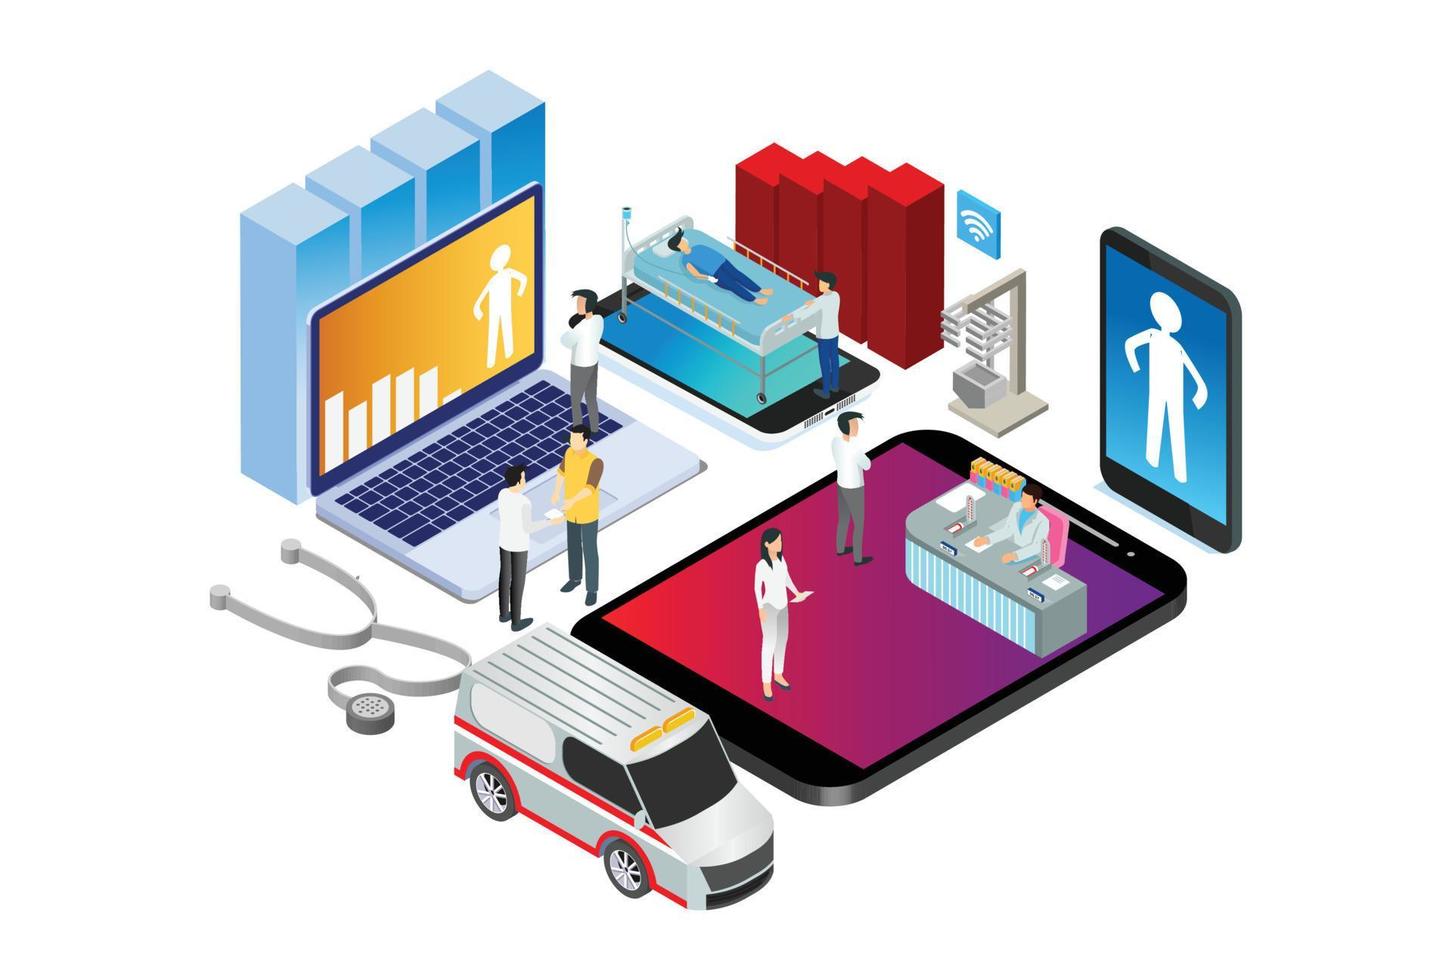 ilustración de tecnología de red de hospital de atención de salud inteligente isométrica moderna en fondo blanco aislado con personas y activos digitales relacionados vector